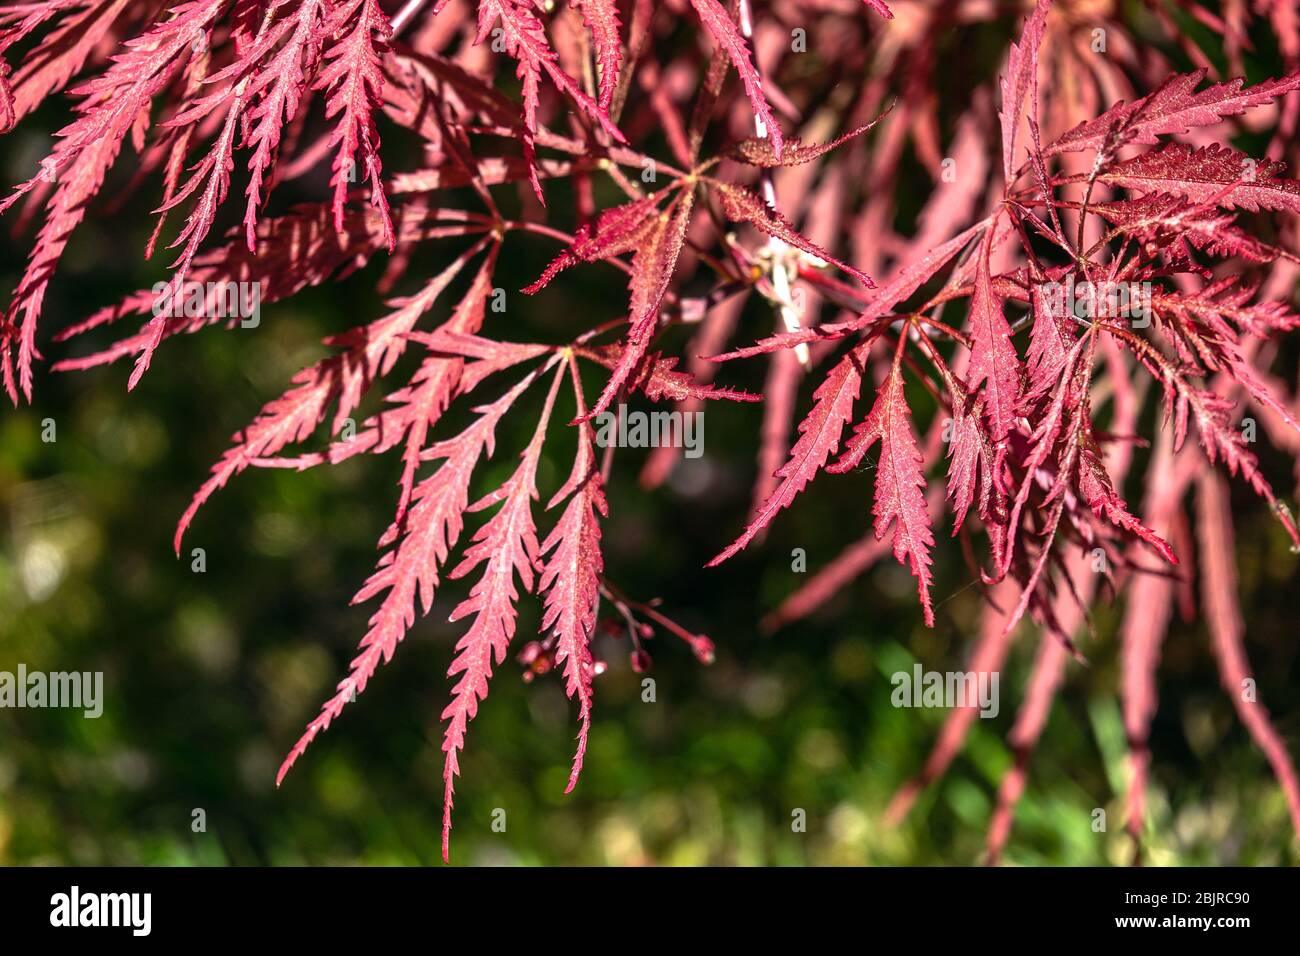 Japanese Maple tree leaves Acer palmatum 'Dissectum Nigrum' Stock Photo